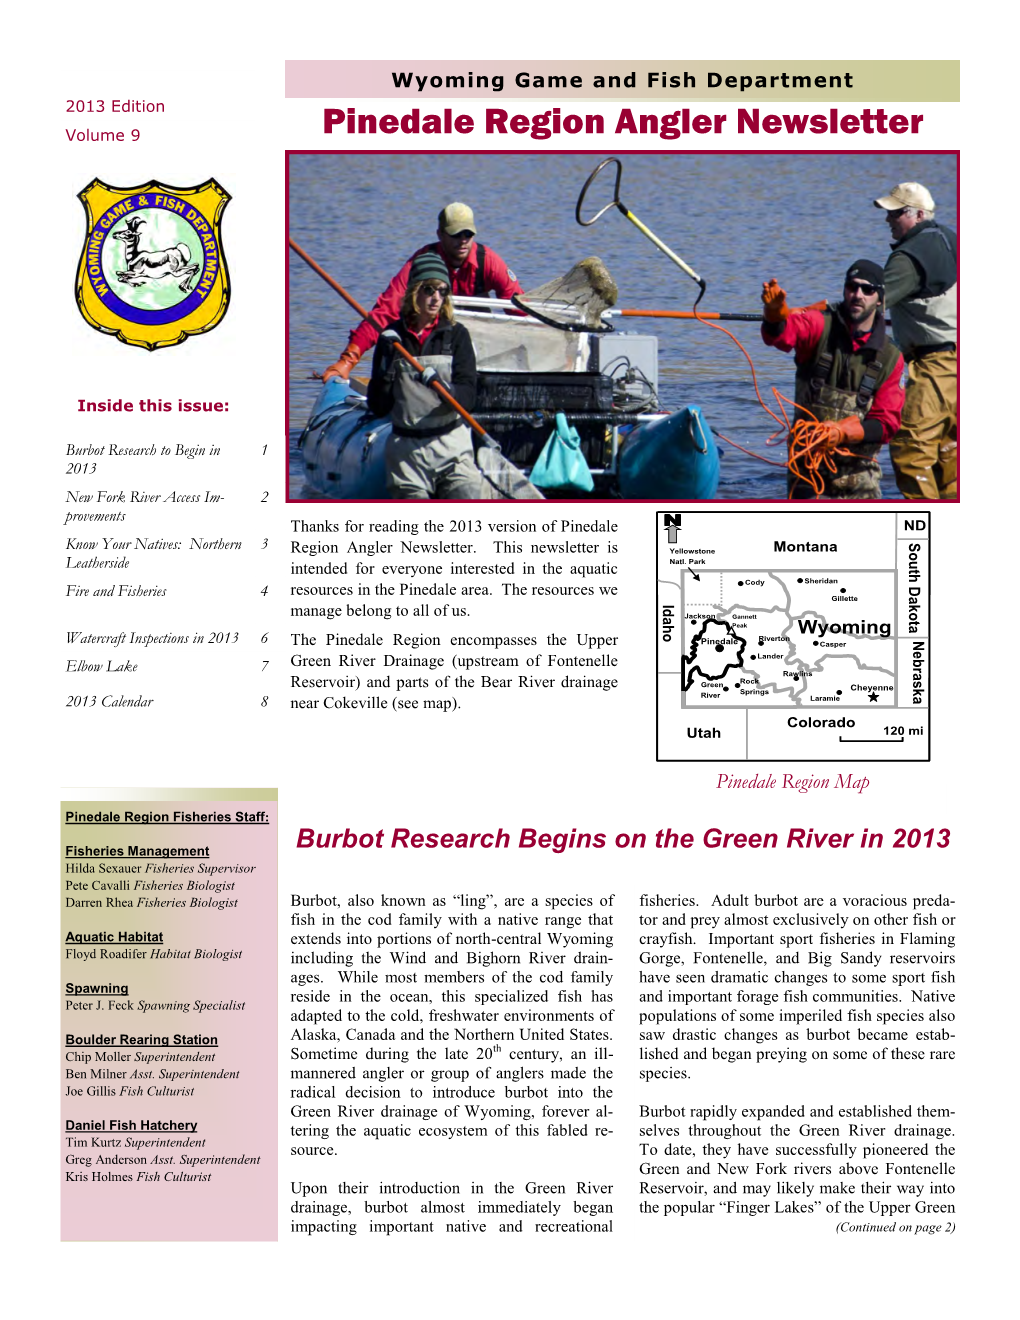 Pinedale Region Angler Newsletter